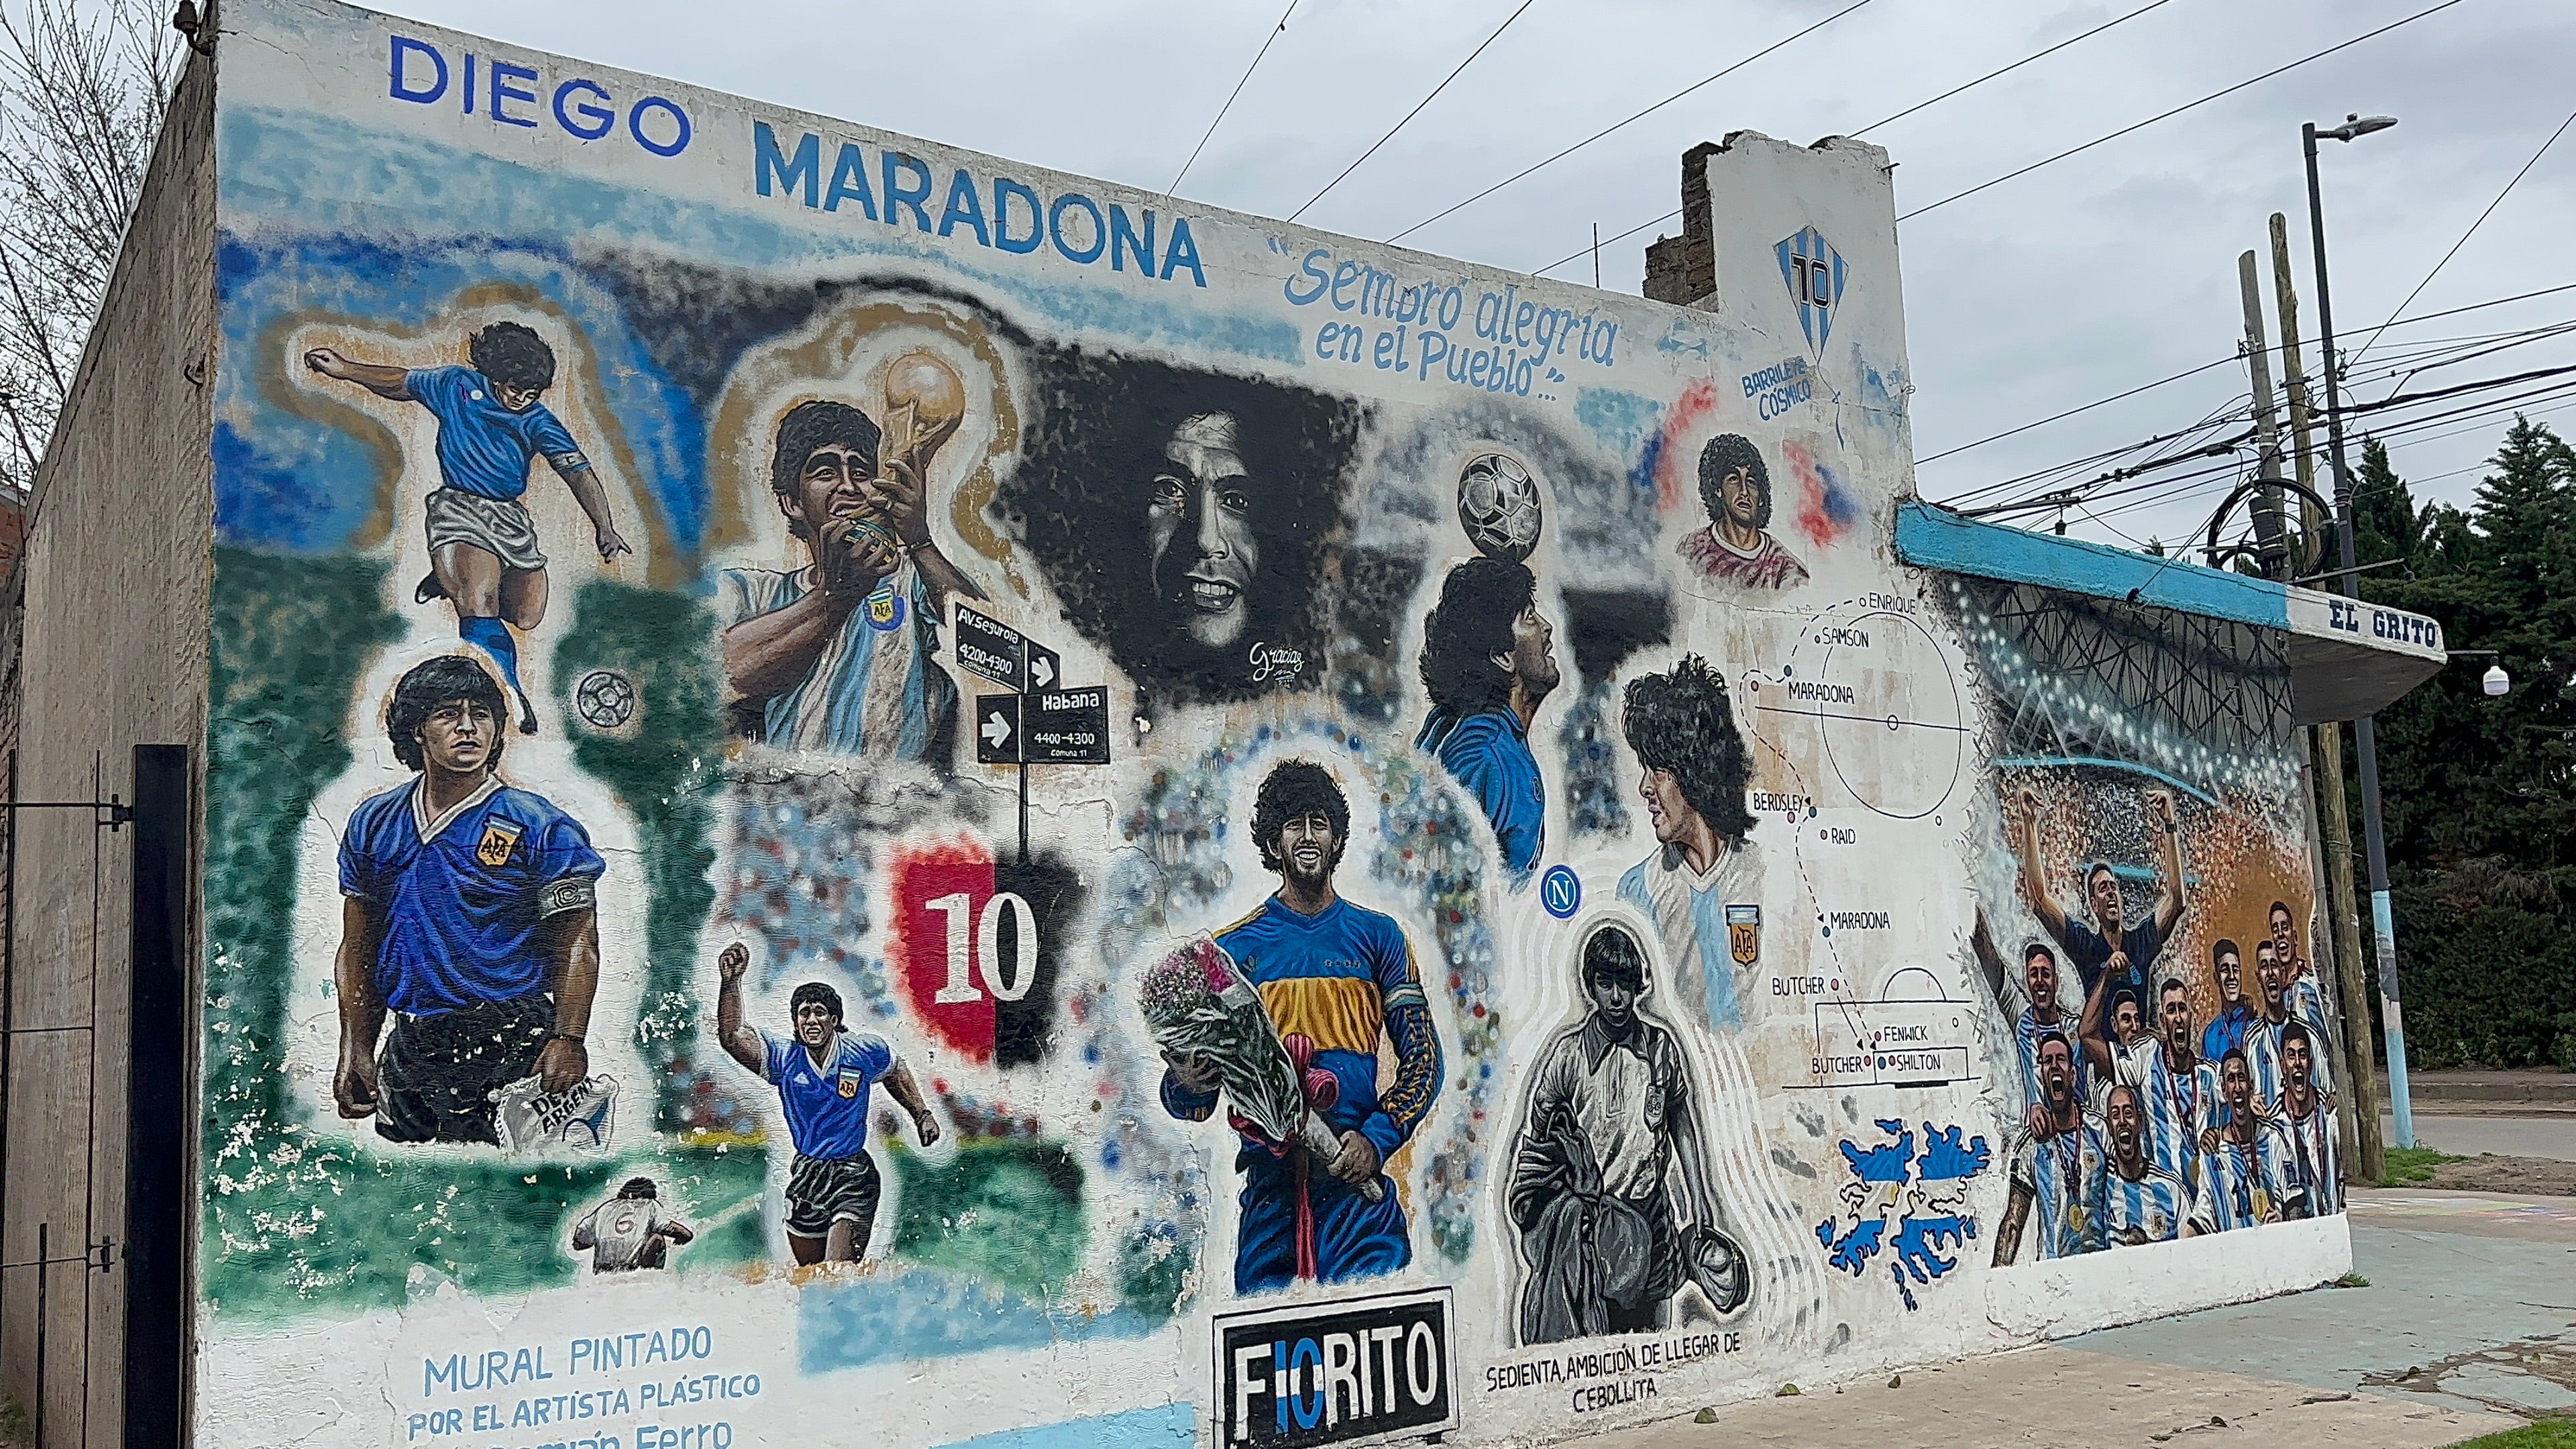 La peregrinación a la tumba de Maradona